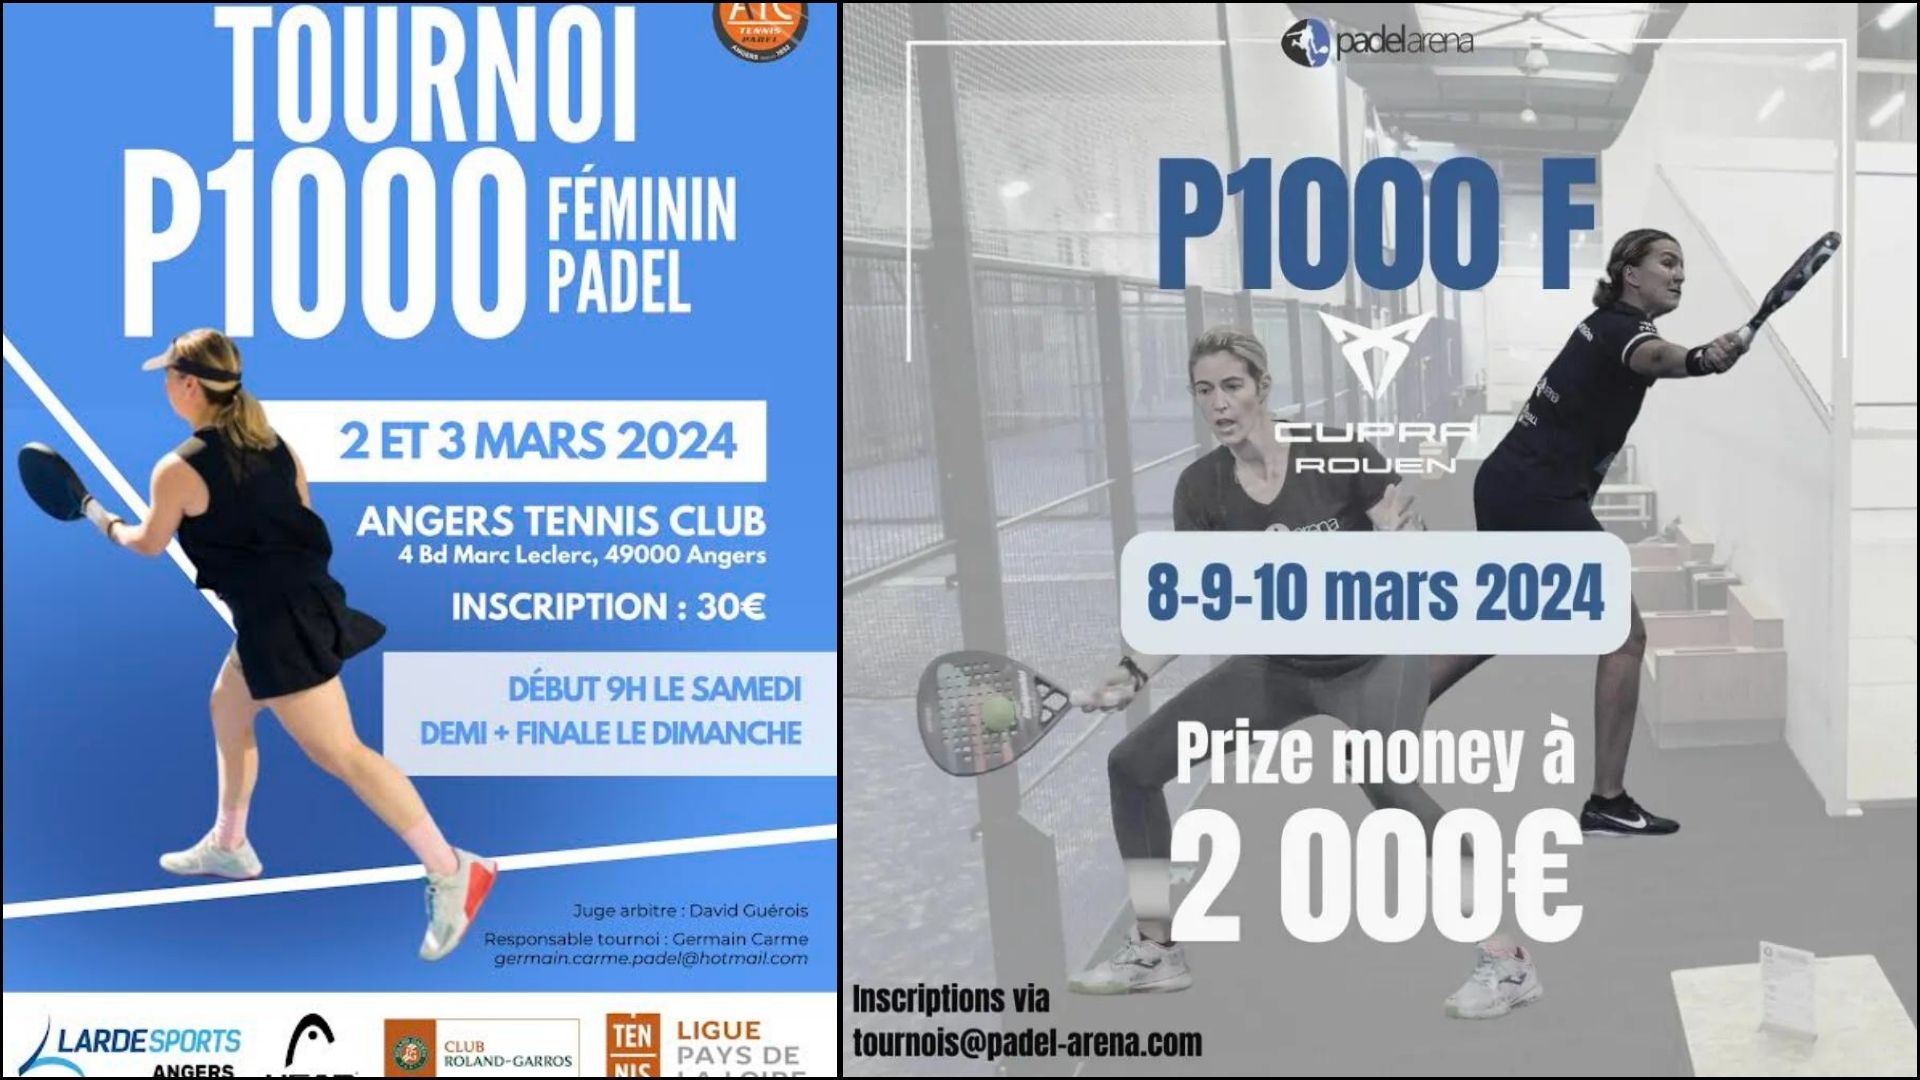 P1000 Angers plakat - Padel Arena